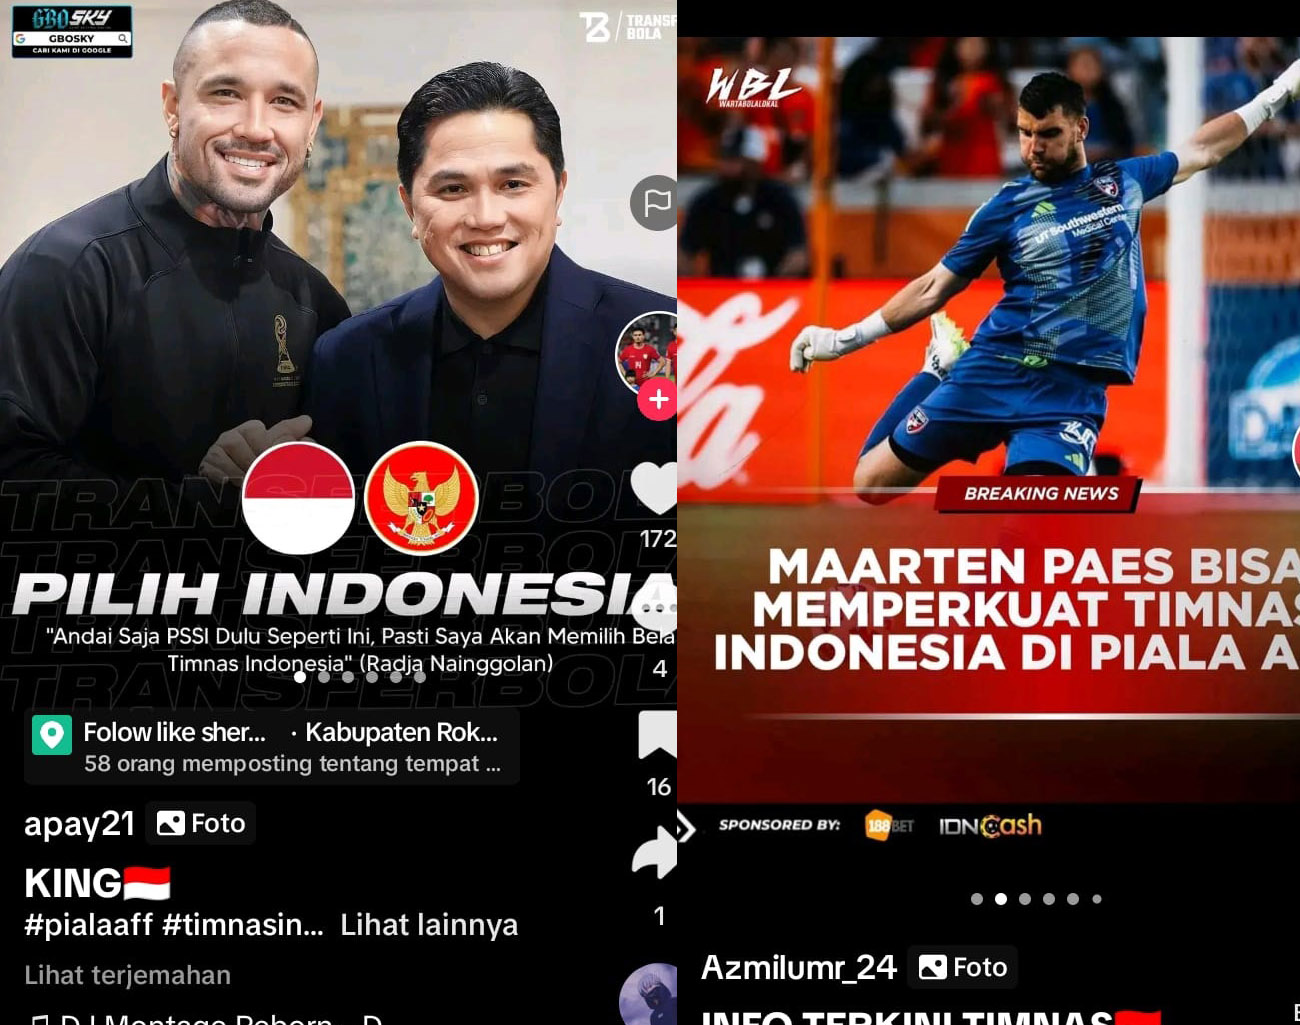 Erick Thohir Luar Biasa, Pemain Belanda Radja Nainggolan: Andai Dulu PSSI Seperti ini, Saya Pilih Indonesia